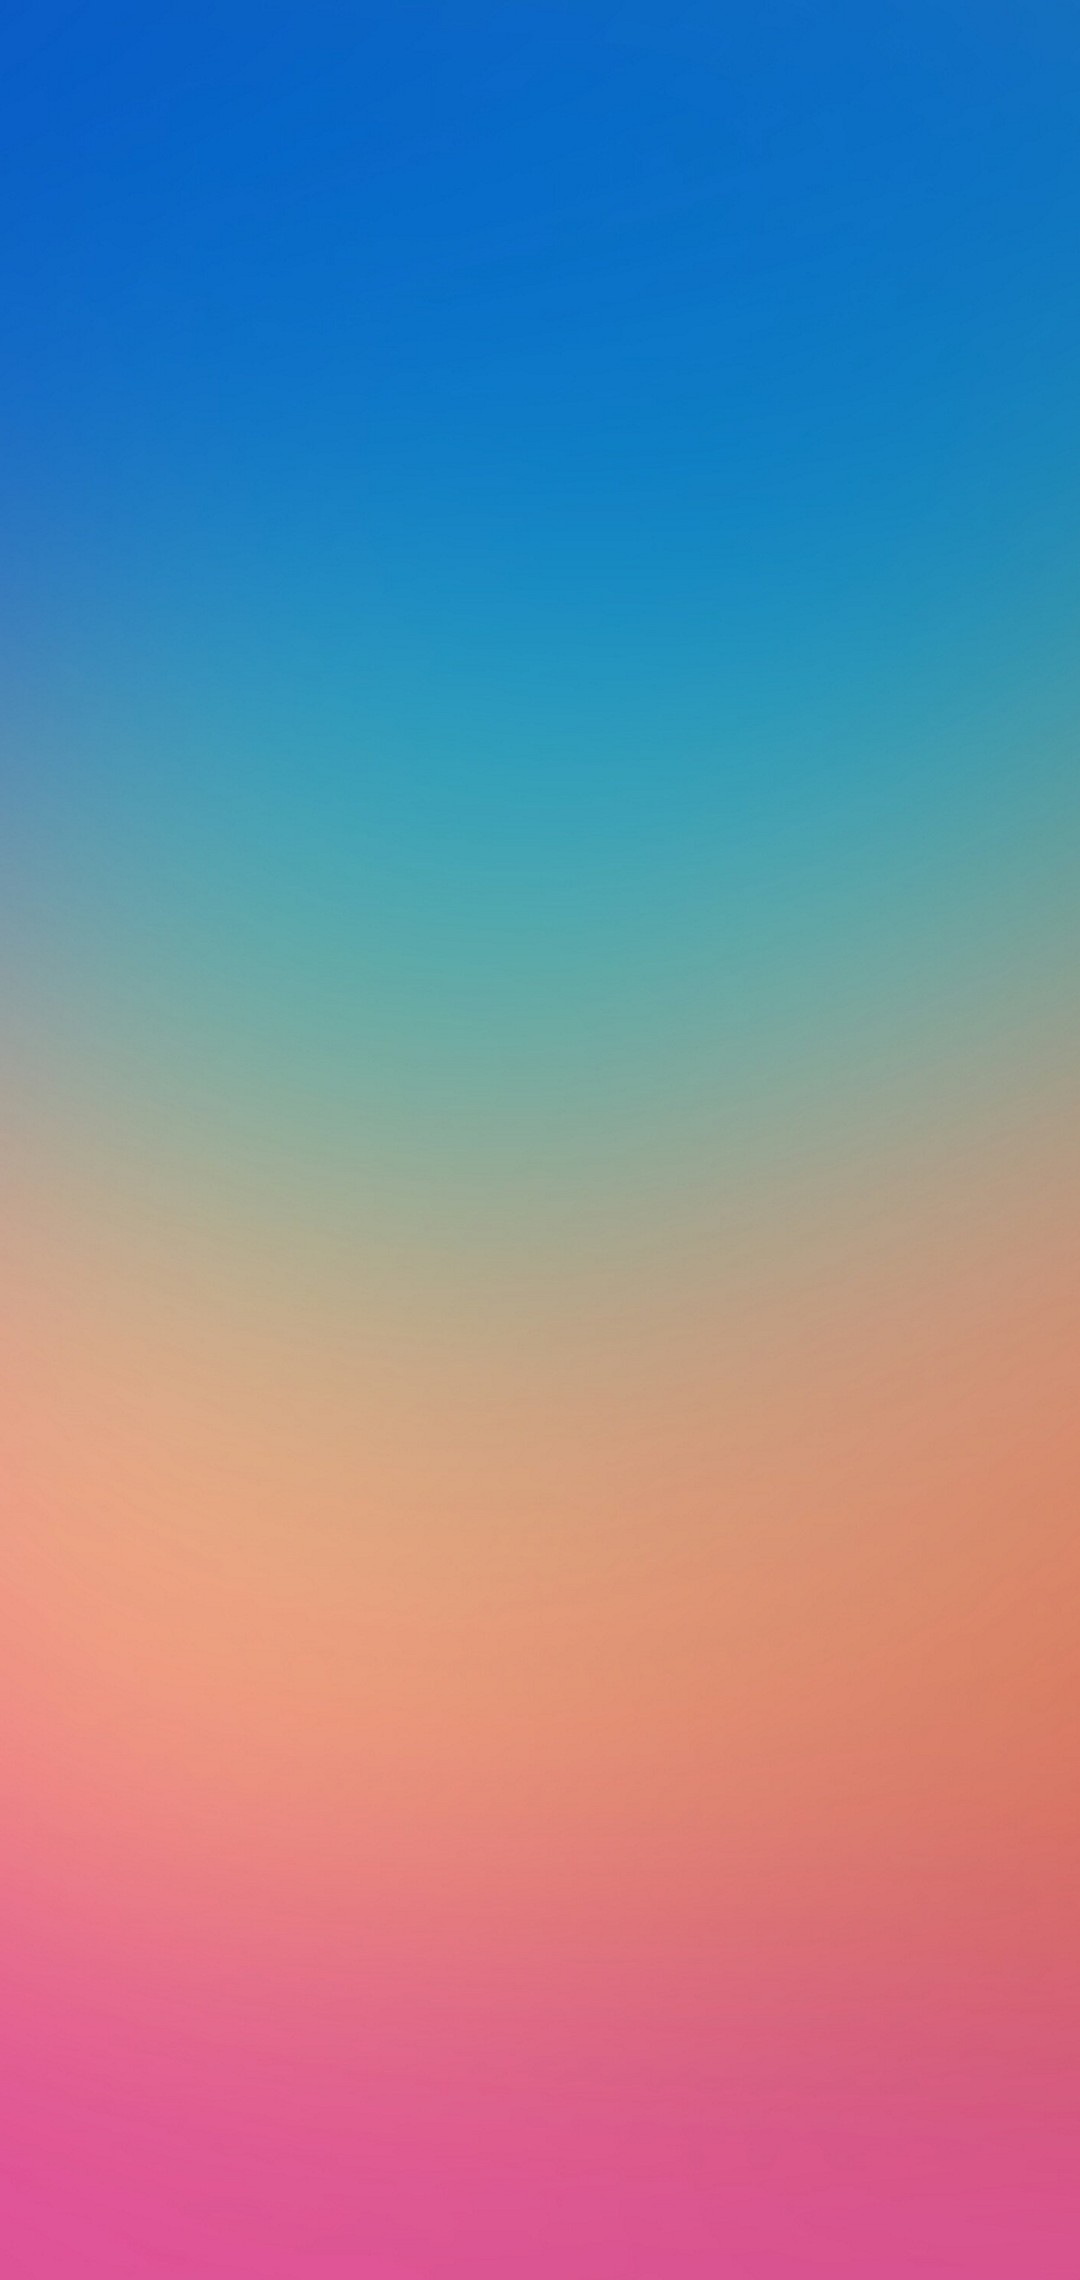 青 緑 オレンジ ピンクの綺麗なグラデーション Zenfone Max Pro M2 Androidスマホ壁紙 待ち受け スマラン